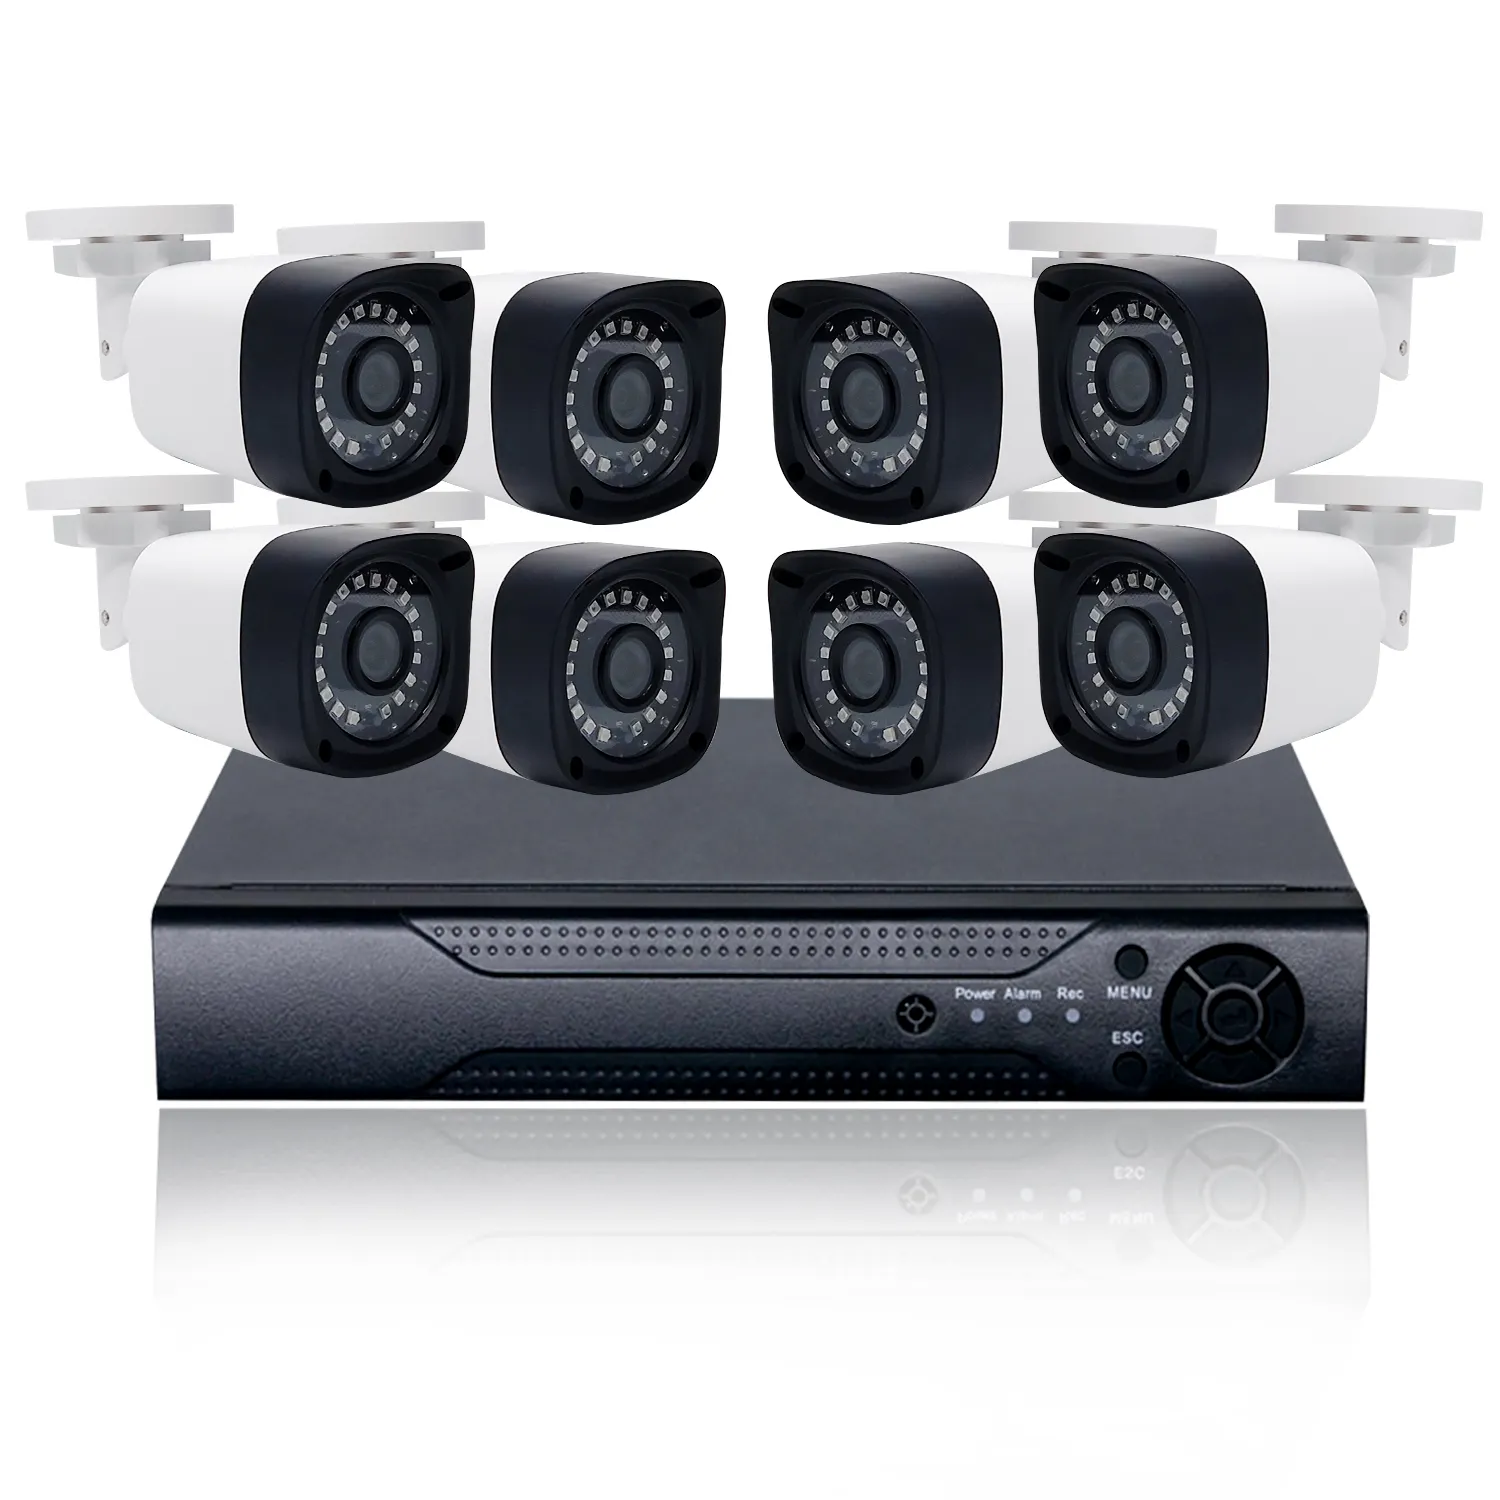 WESECUU أفضل بيع 2MP 5MP 8MP DVR نظام مراقبة dvr 8 قناة نظام الدائرة التلفزيونية المغلقة كاميرا الأمن كاميرا العهد التناظرية كاميرا